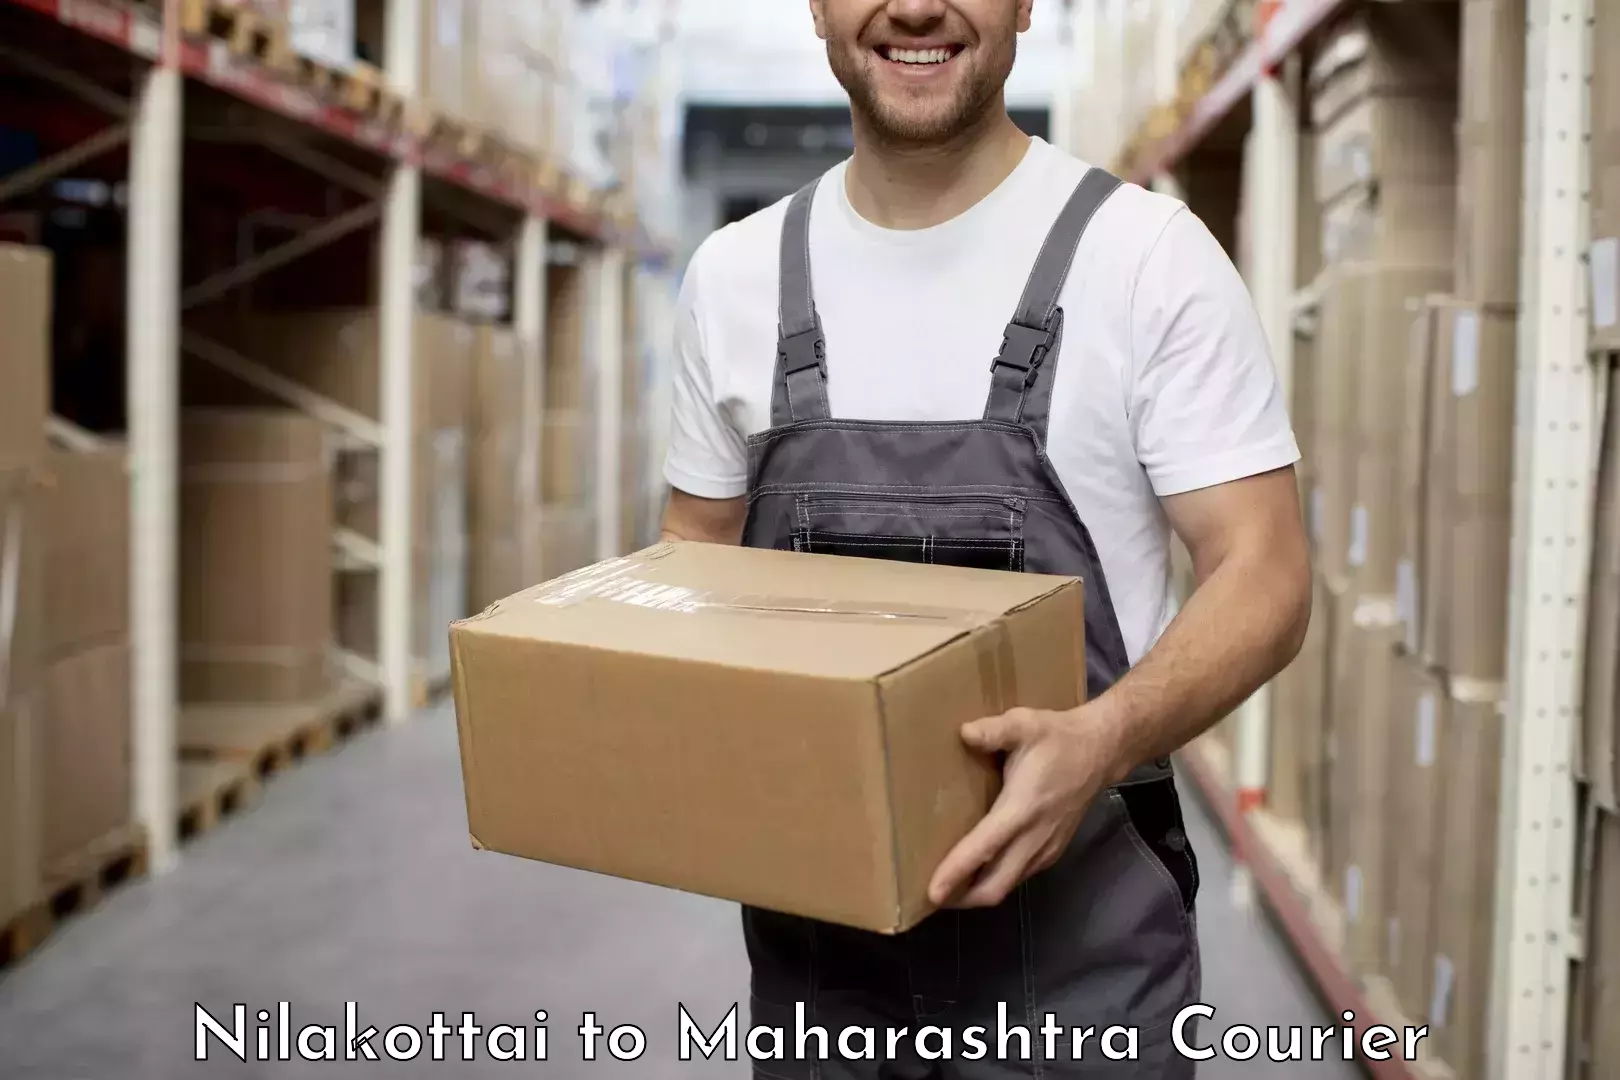 Professional courier handling Nilakottai to Karanja